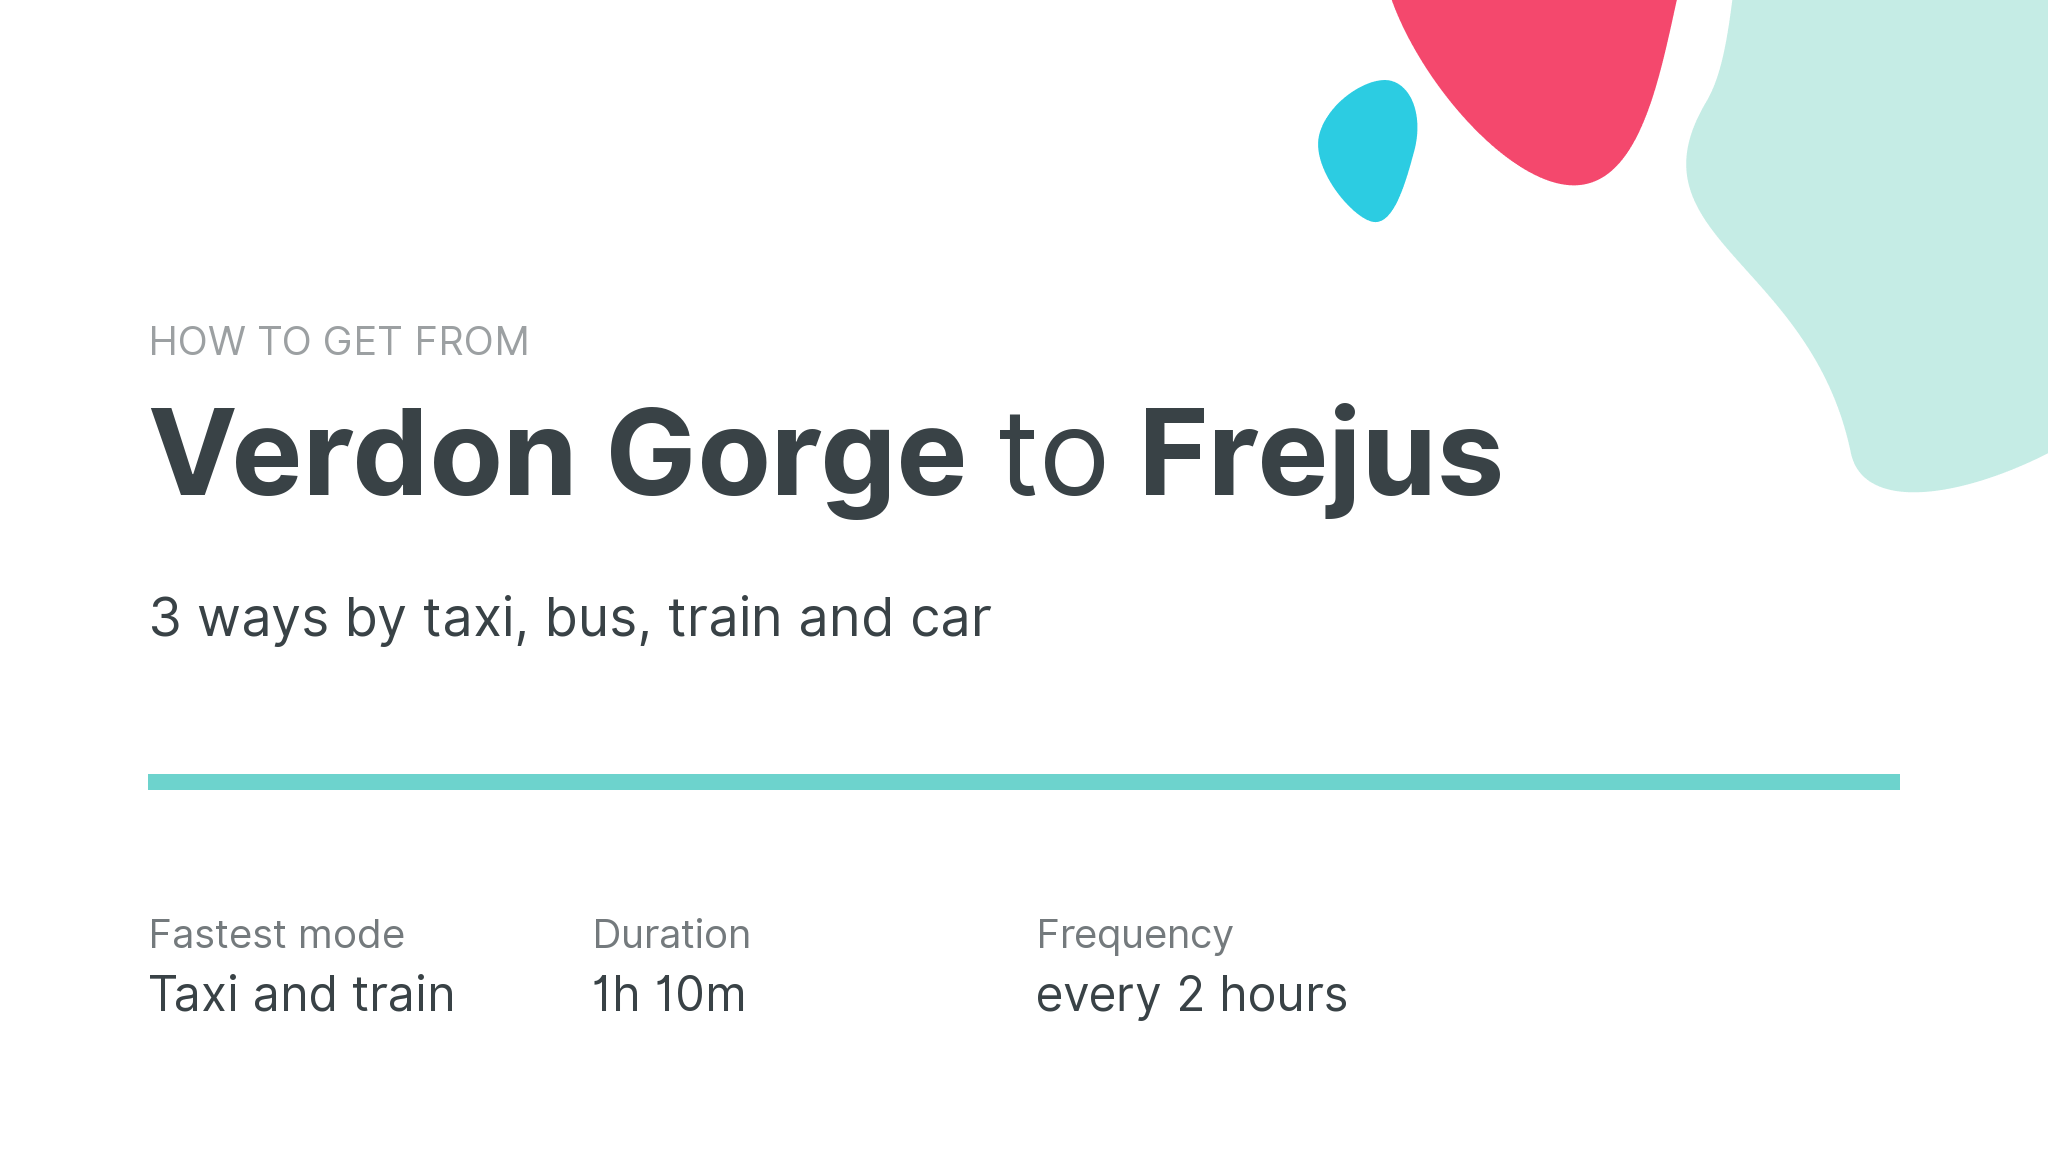 How do I get from Verdon Gorge to Frejus